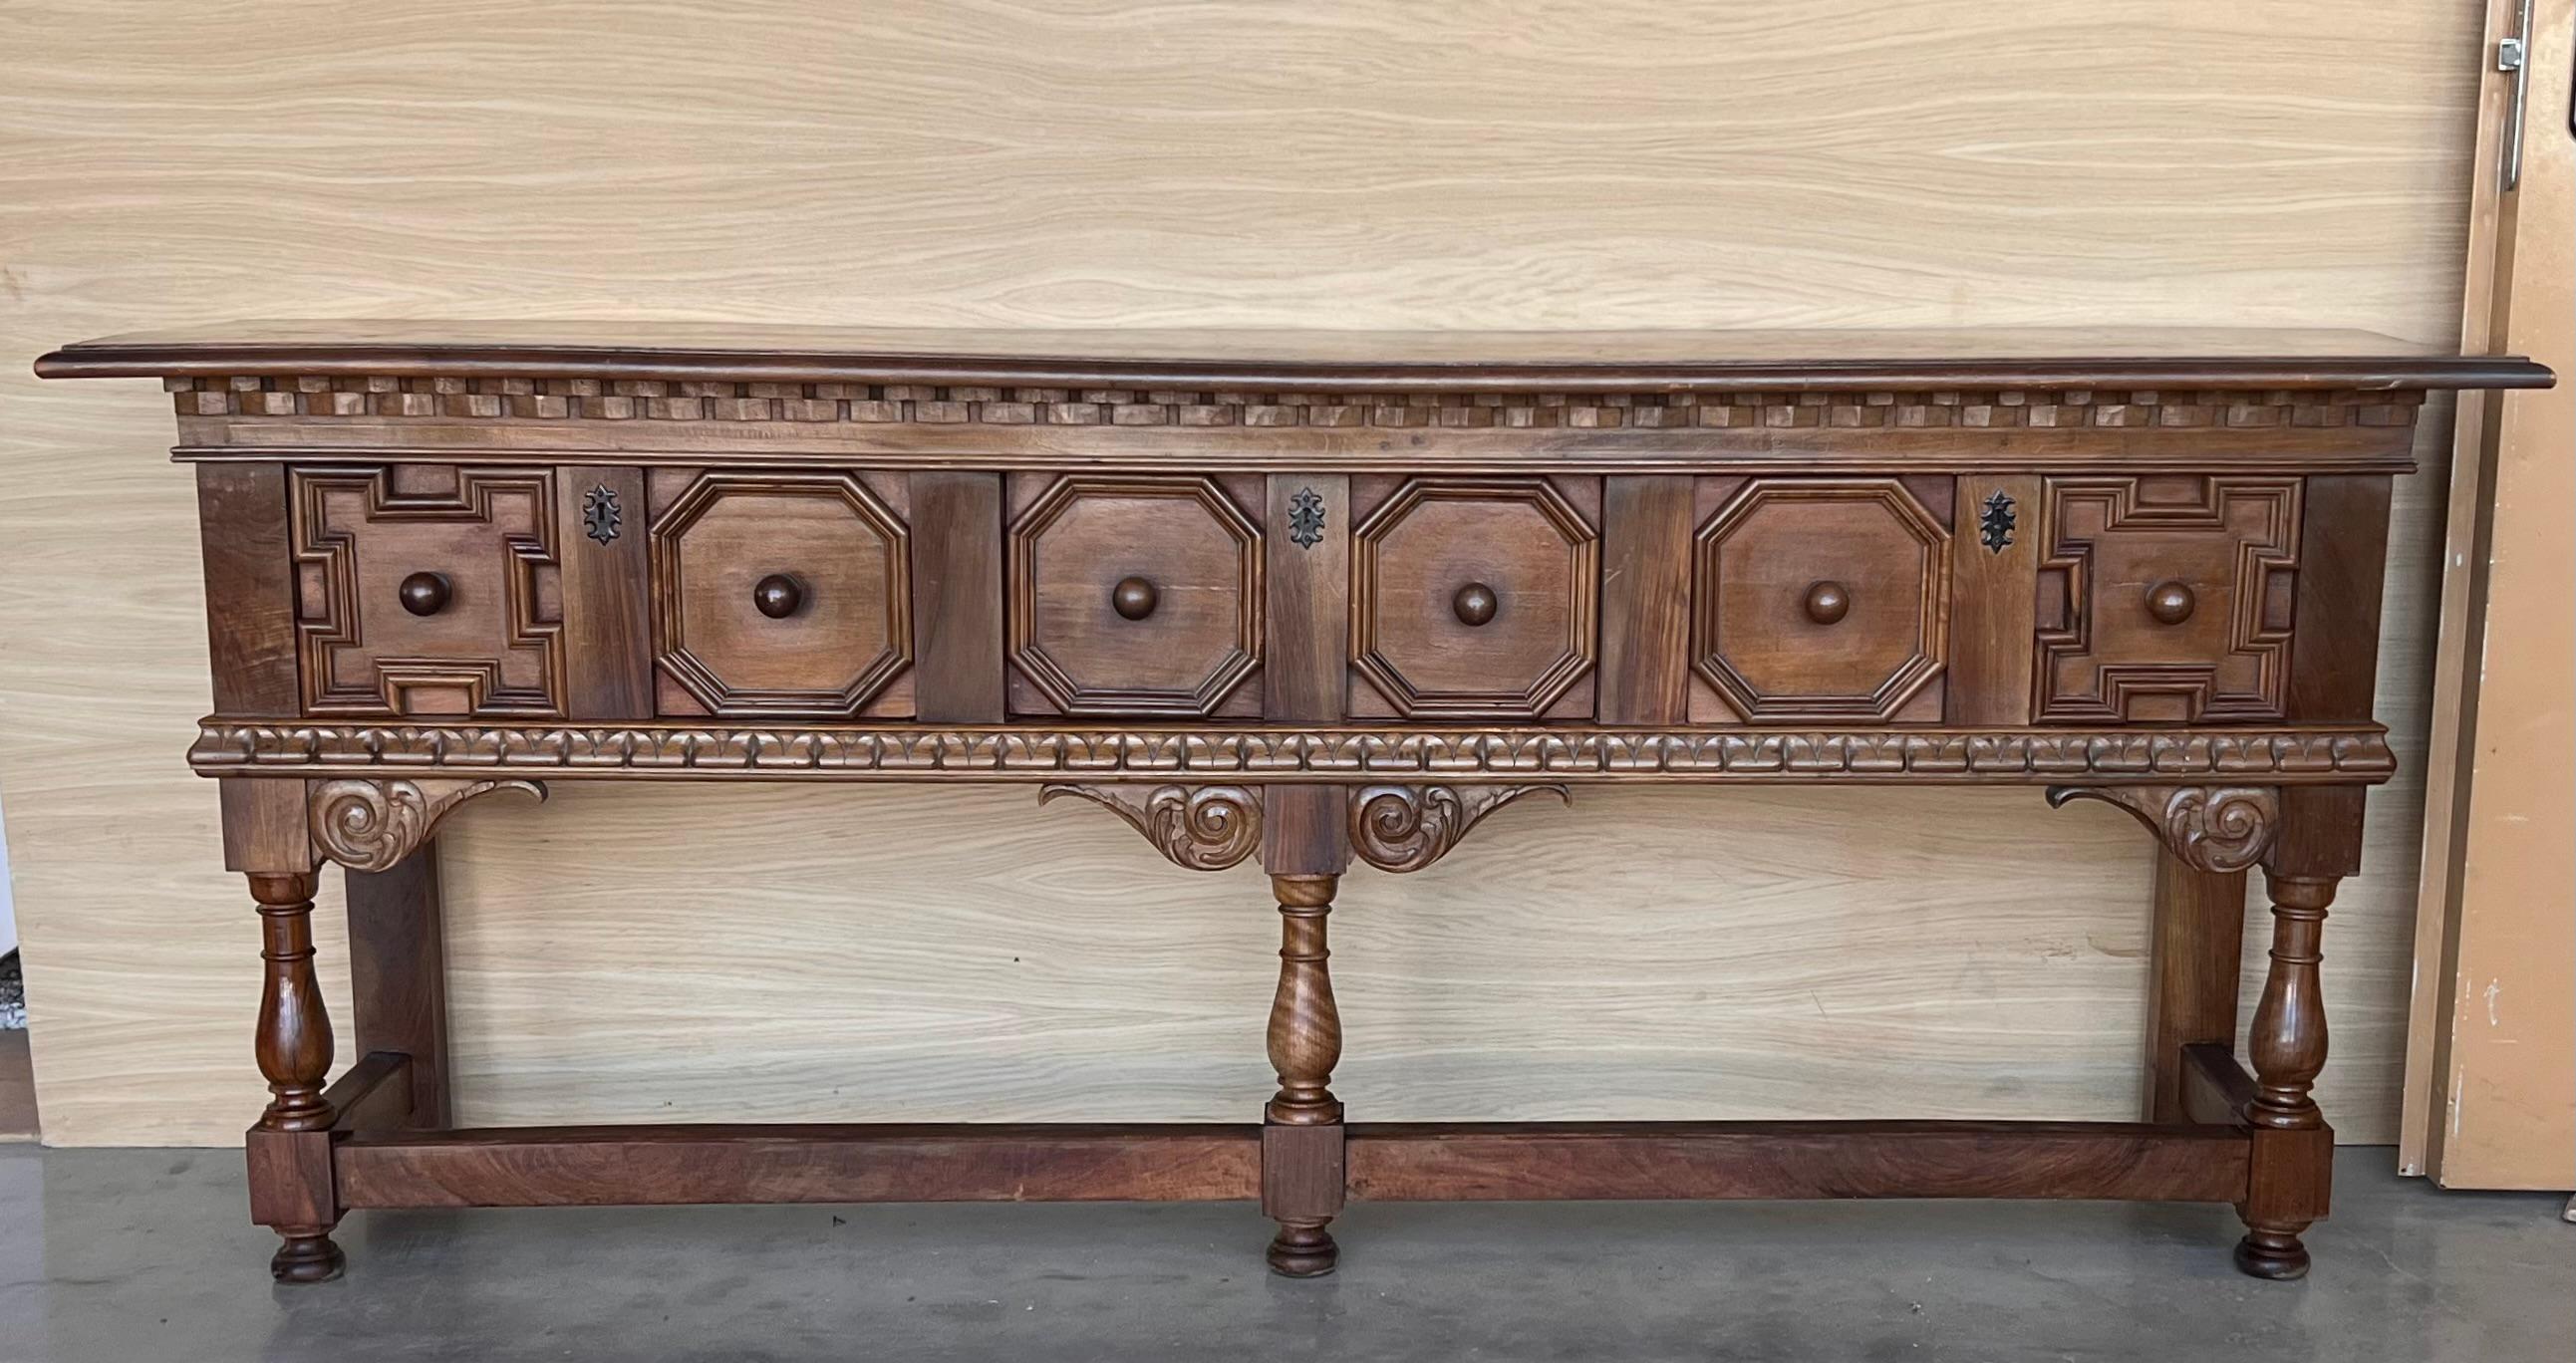 Pièce unique, table de réfectoire espagnole du 20e siècle avec tiroirs et moulures sculptés. Deux tirettes en fer dans chaque tiroir

Entièrement restauré.

